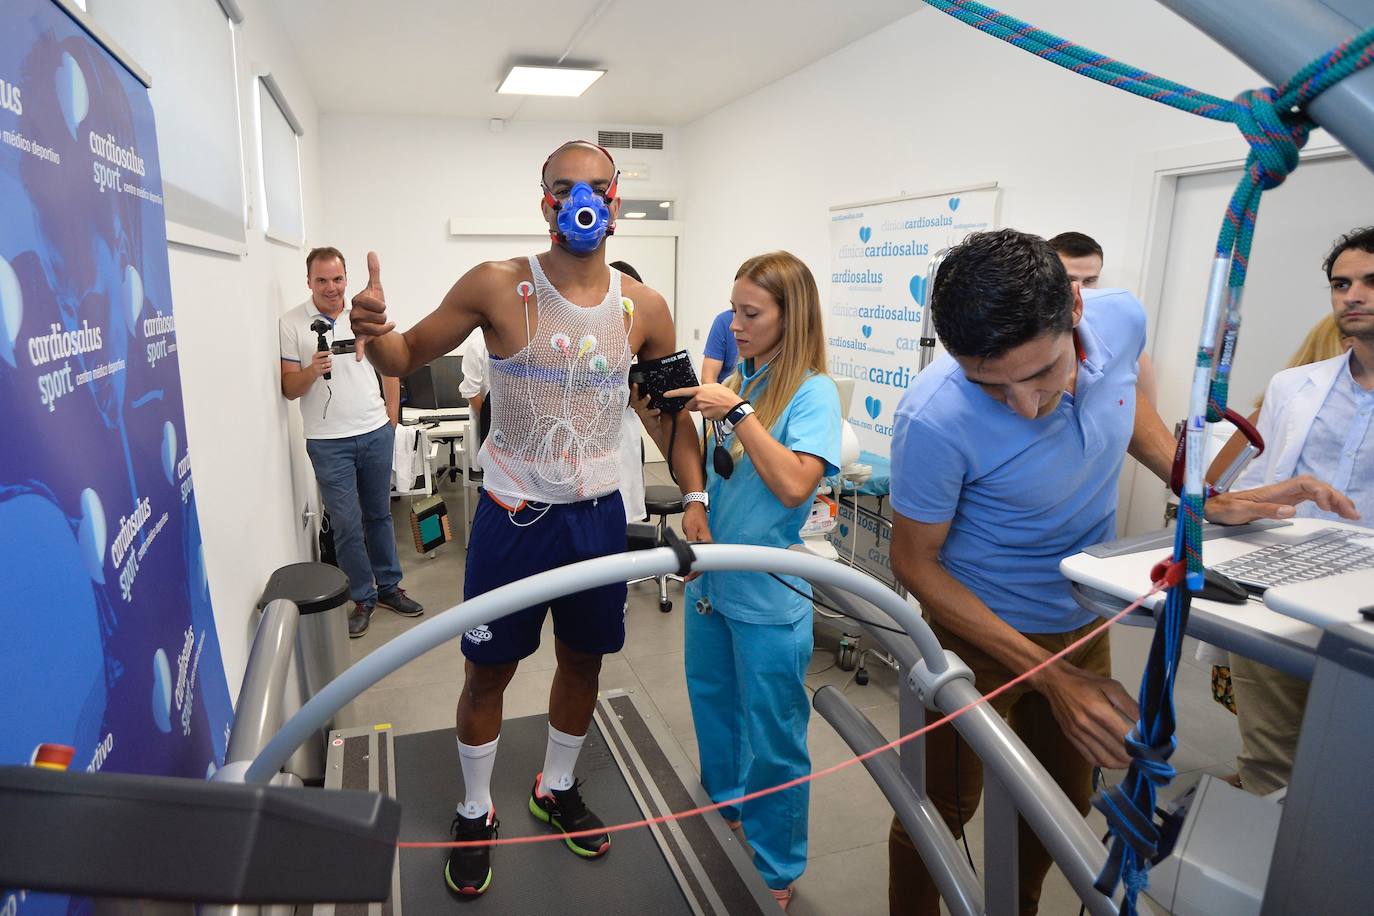 Los jugadores pasaron por Ibermutuamur y el Palacio de los Deportes para los test de fisioterapia y podología, además de por Cardiosalus, que acogió las pruebas de esfuerzo y antropometría.